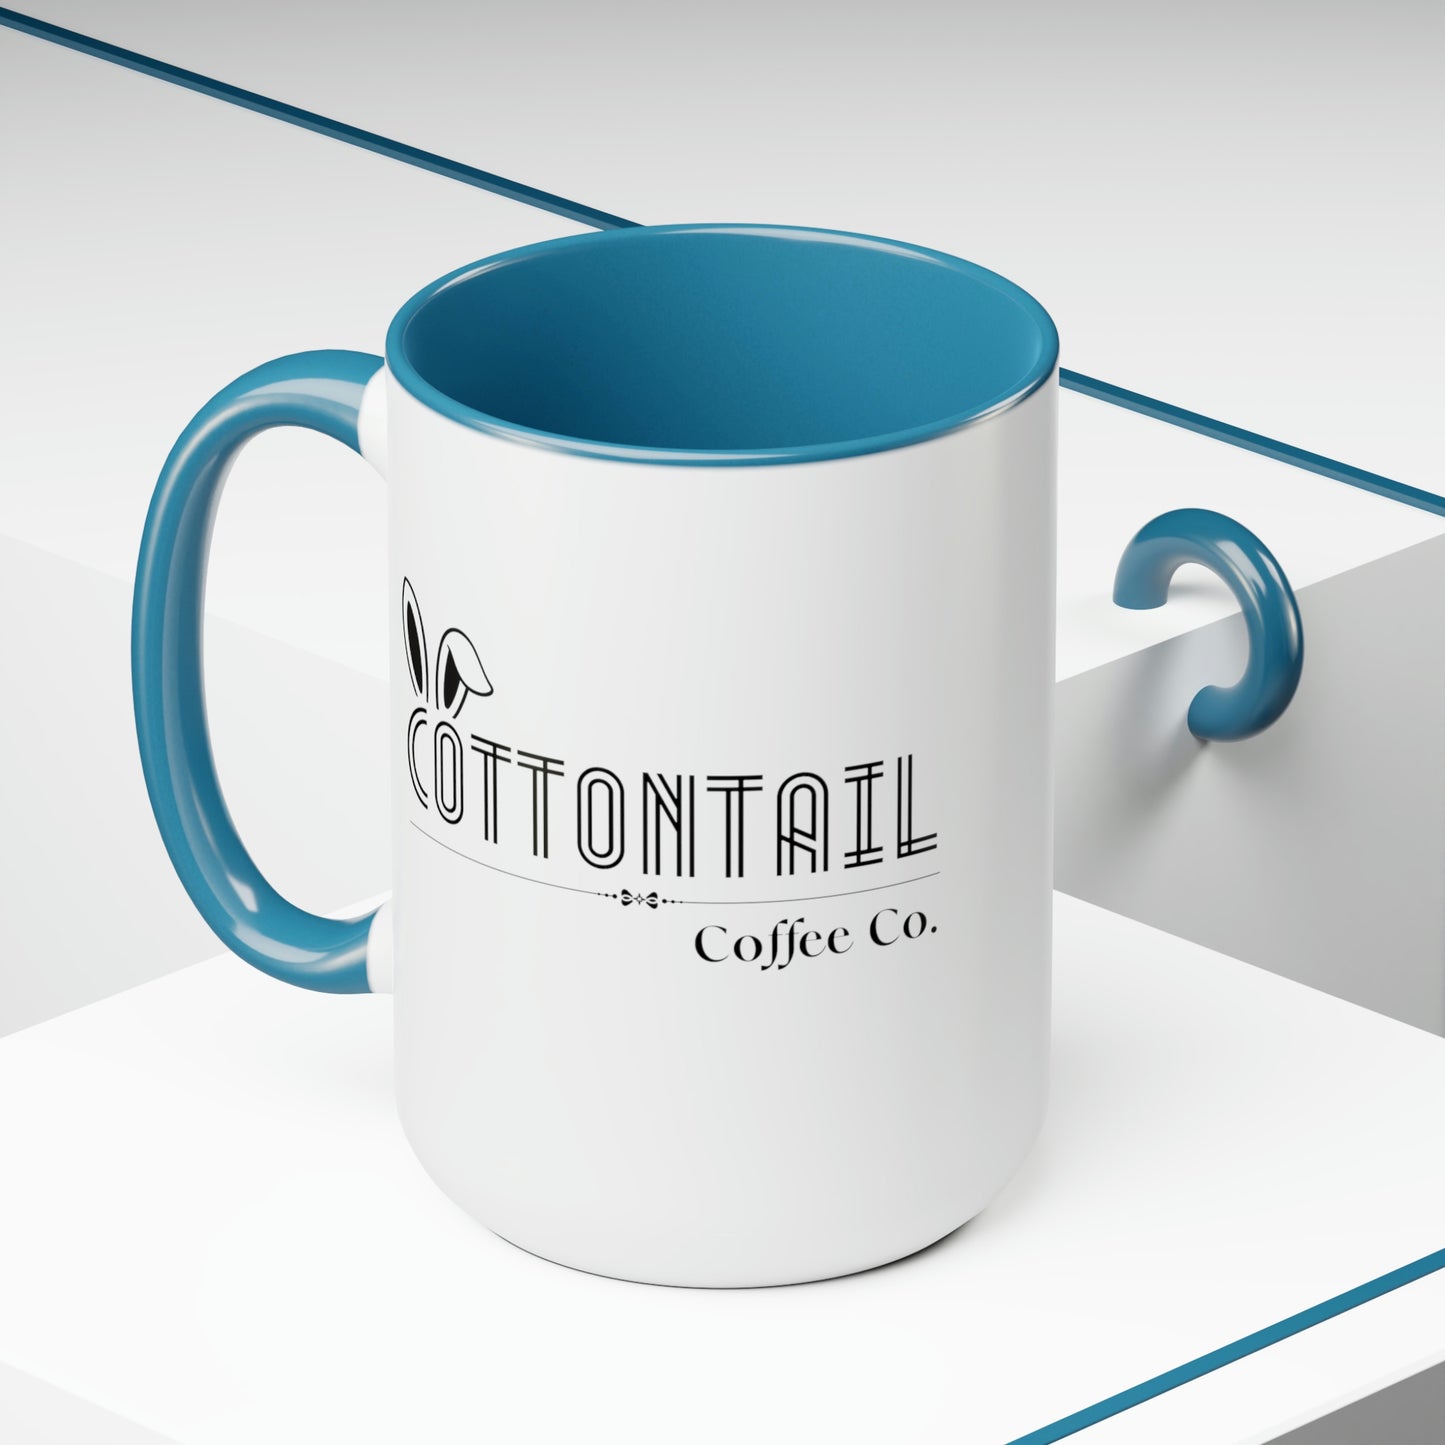 "Cottontail Coffee Co." Retro 15oz Mug